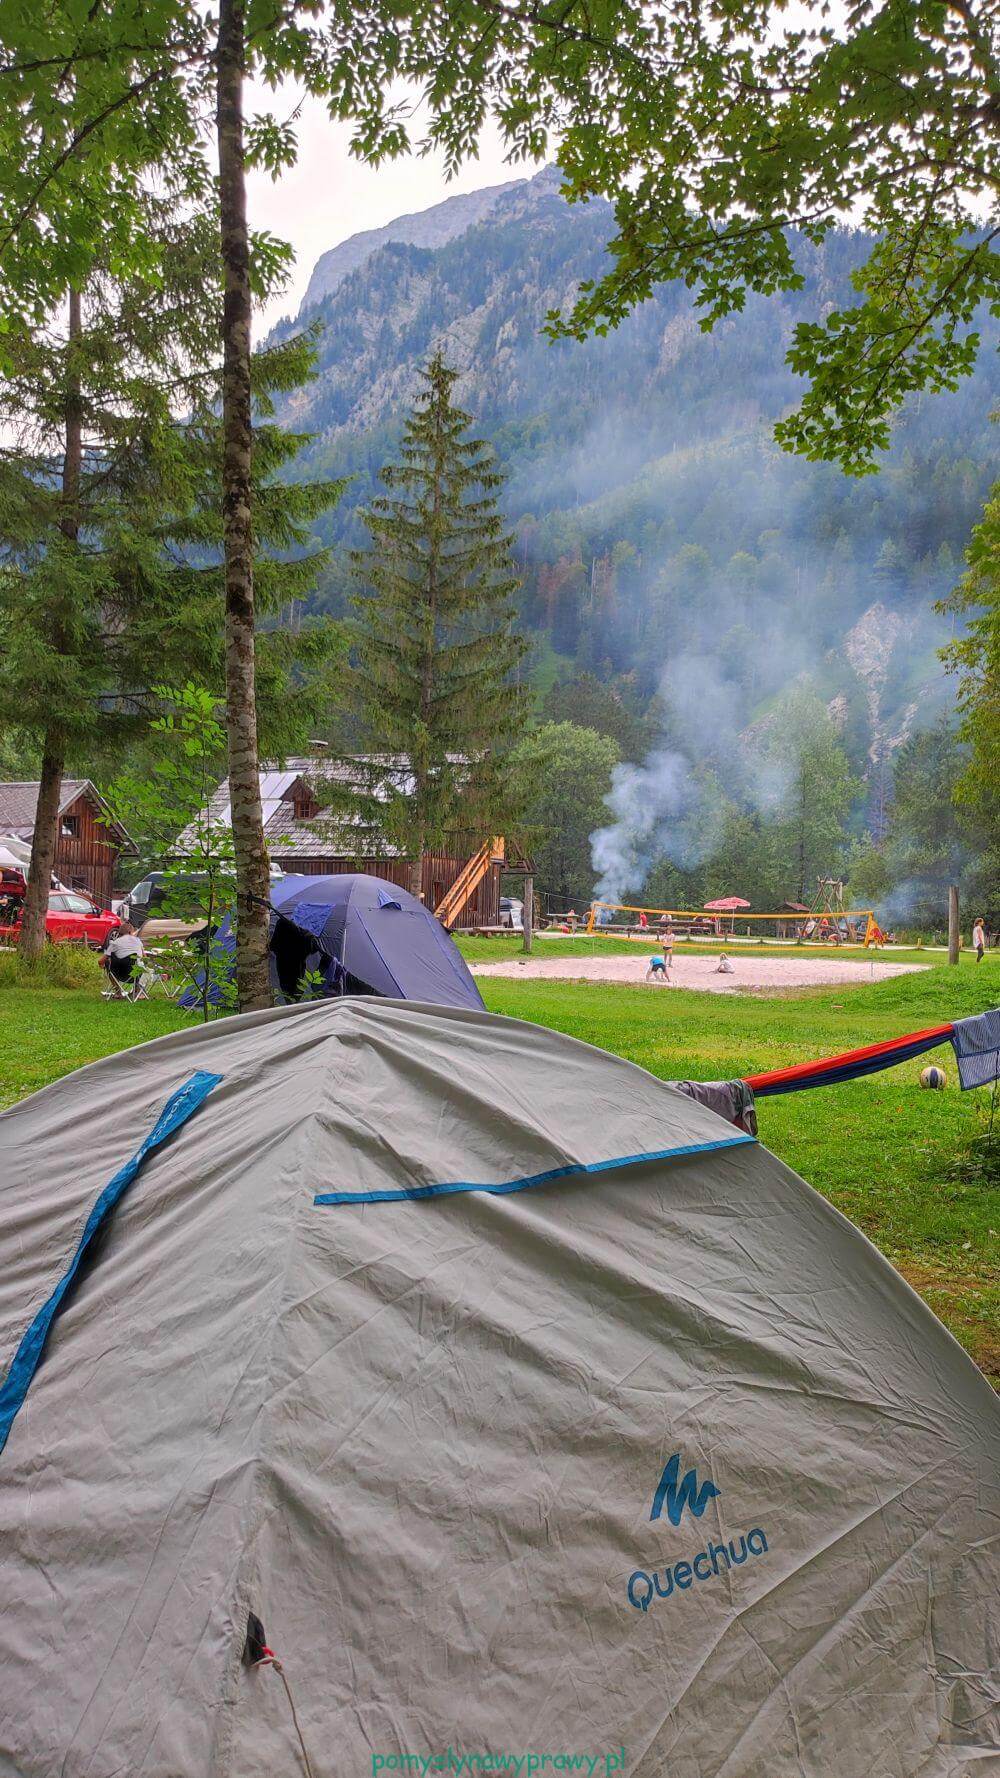 Campingplatz Forstgarten